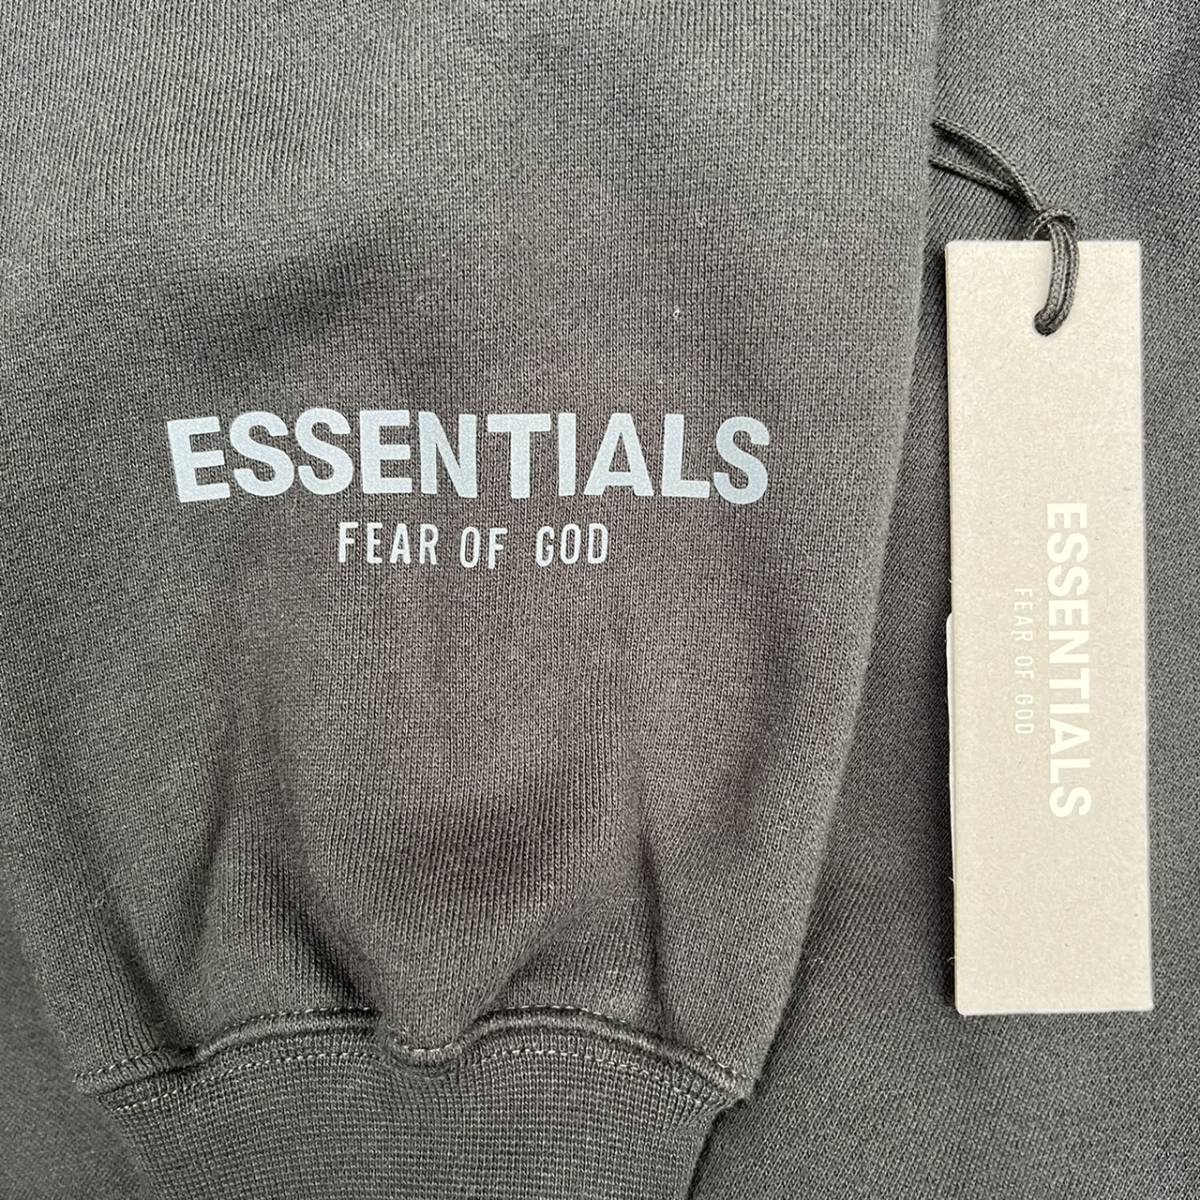 新品 FOG Fear Of God Essentials フィアオブゴッド エッセンシャルズ Sサイズ LOGOスウェット ブラック Black